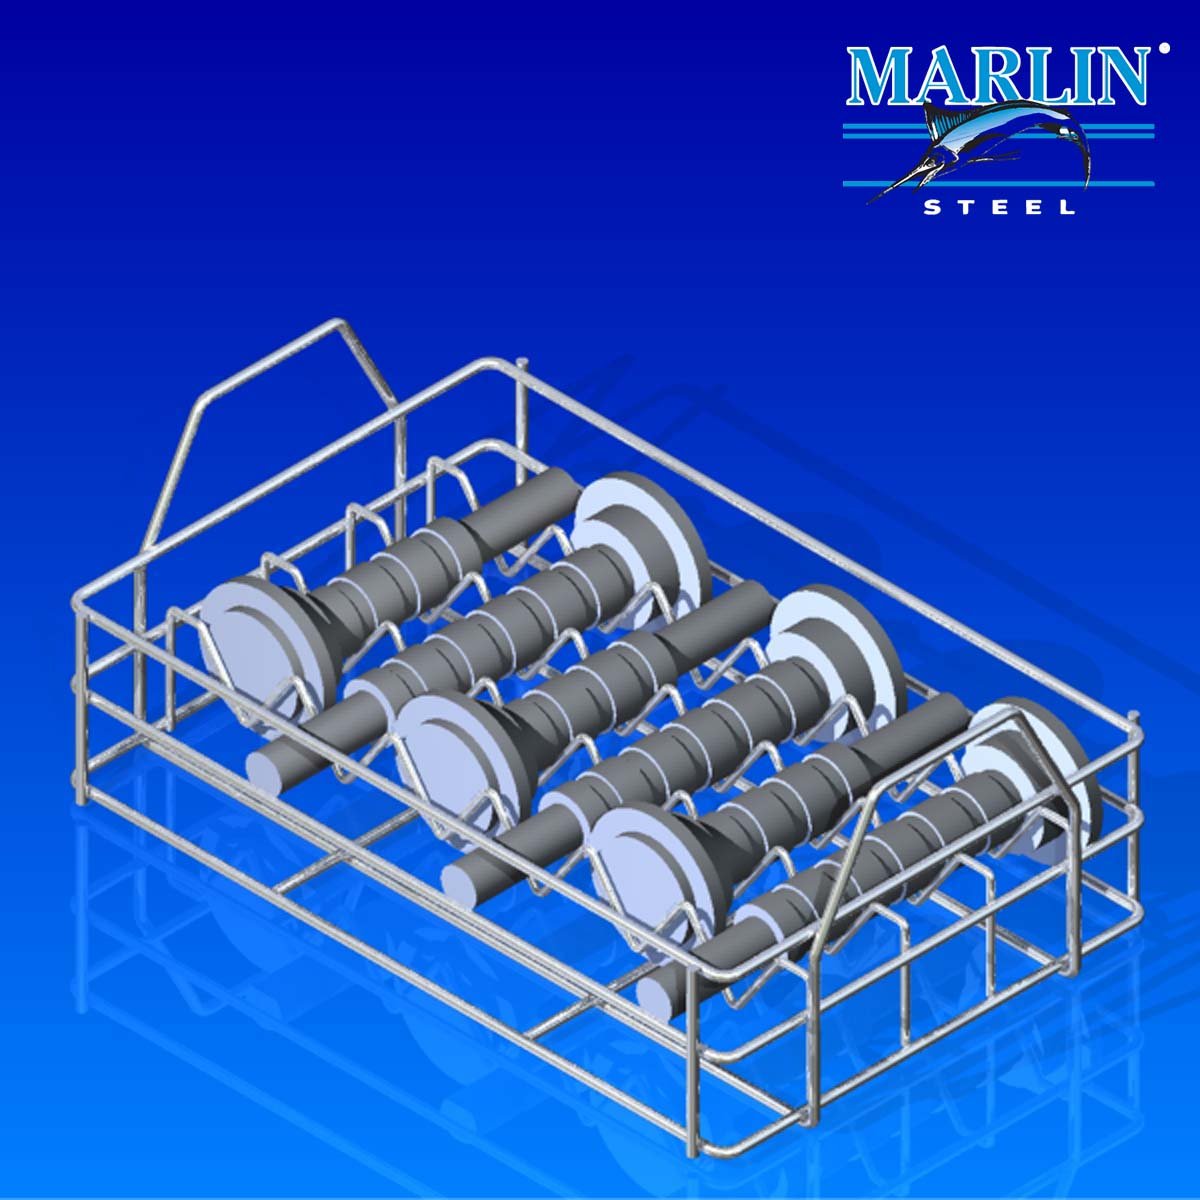 Marlin Steel Material Handling Basket 837002